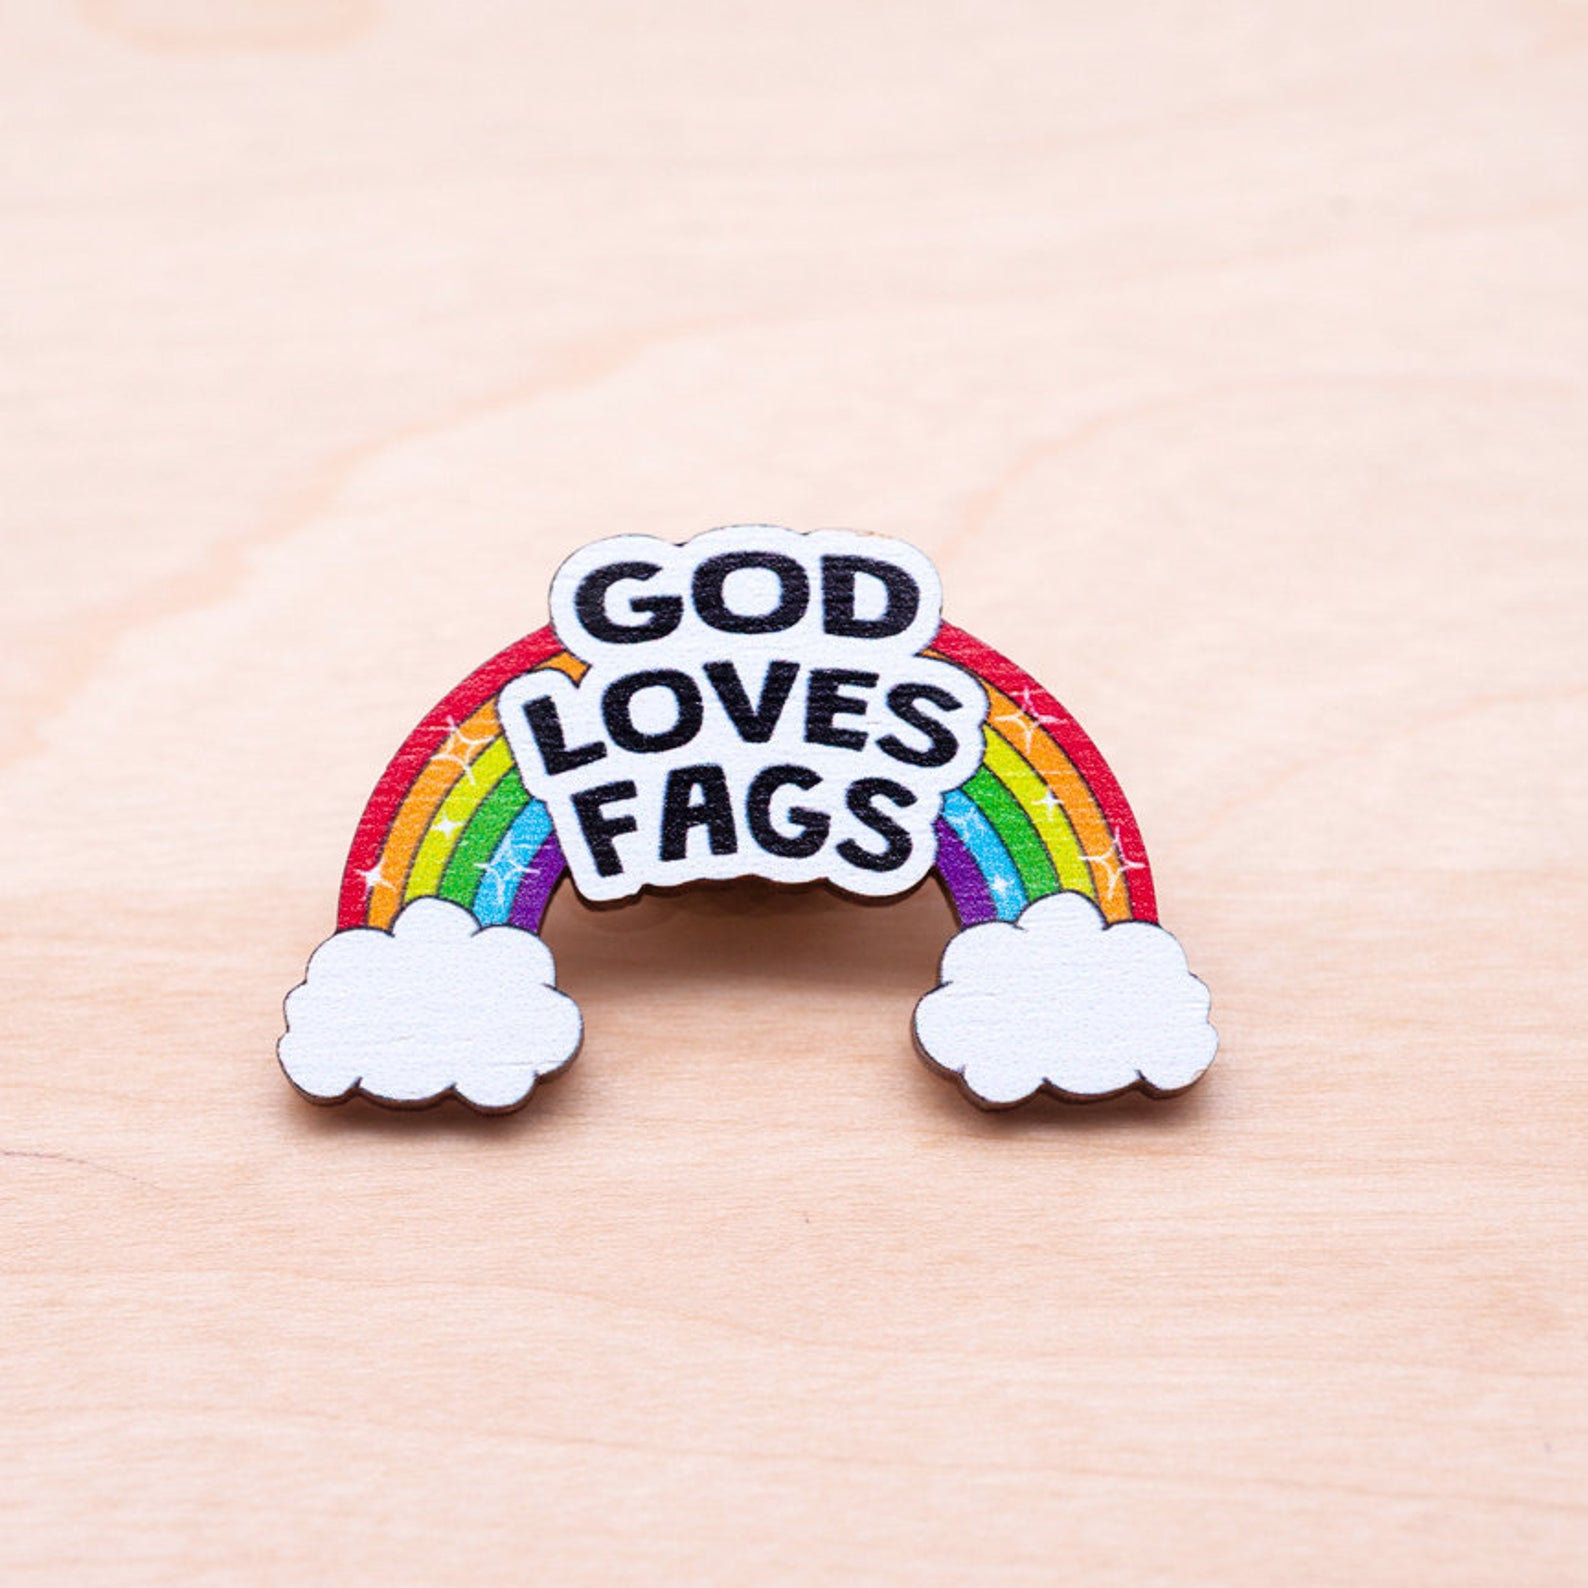 GOD LOVES FAGS